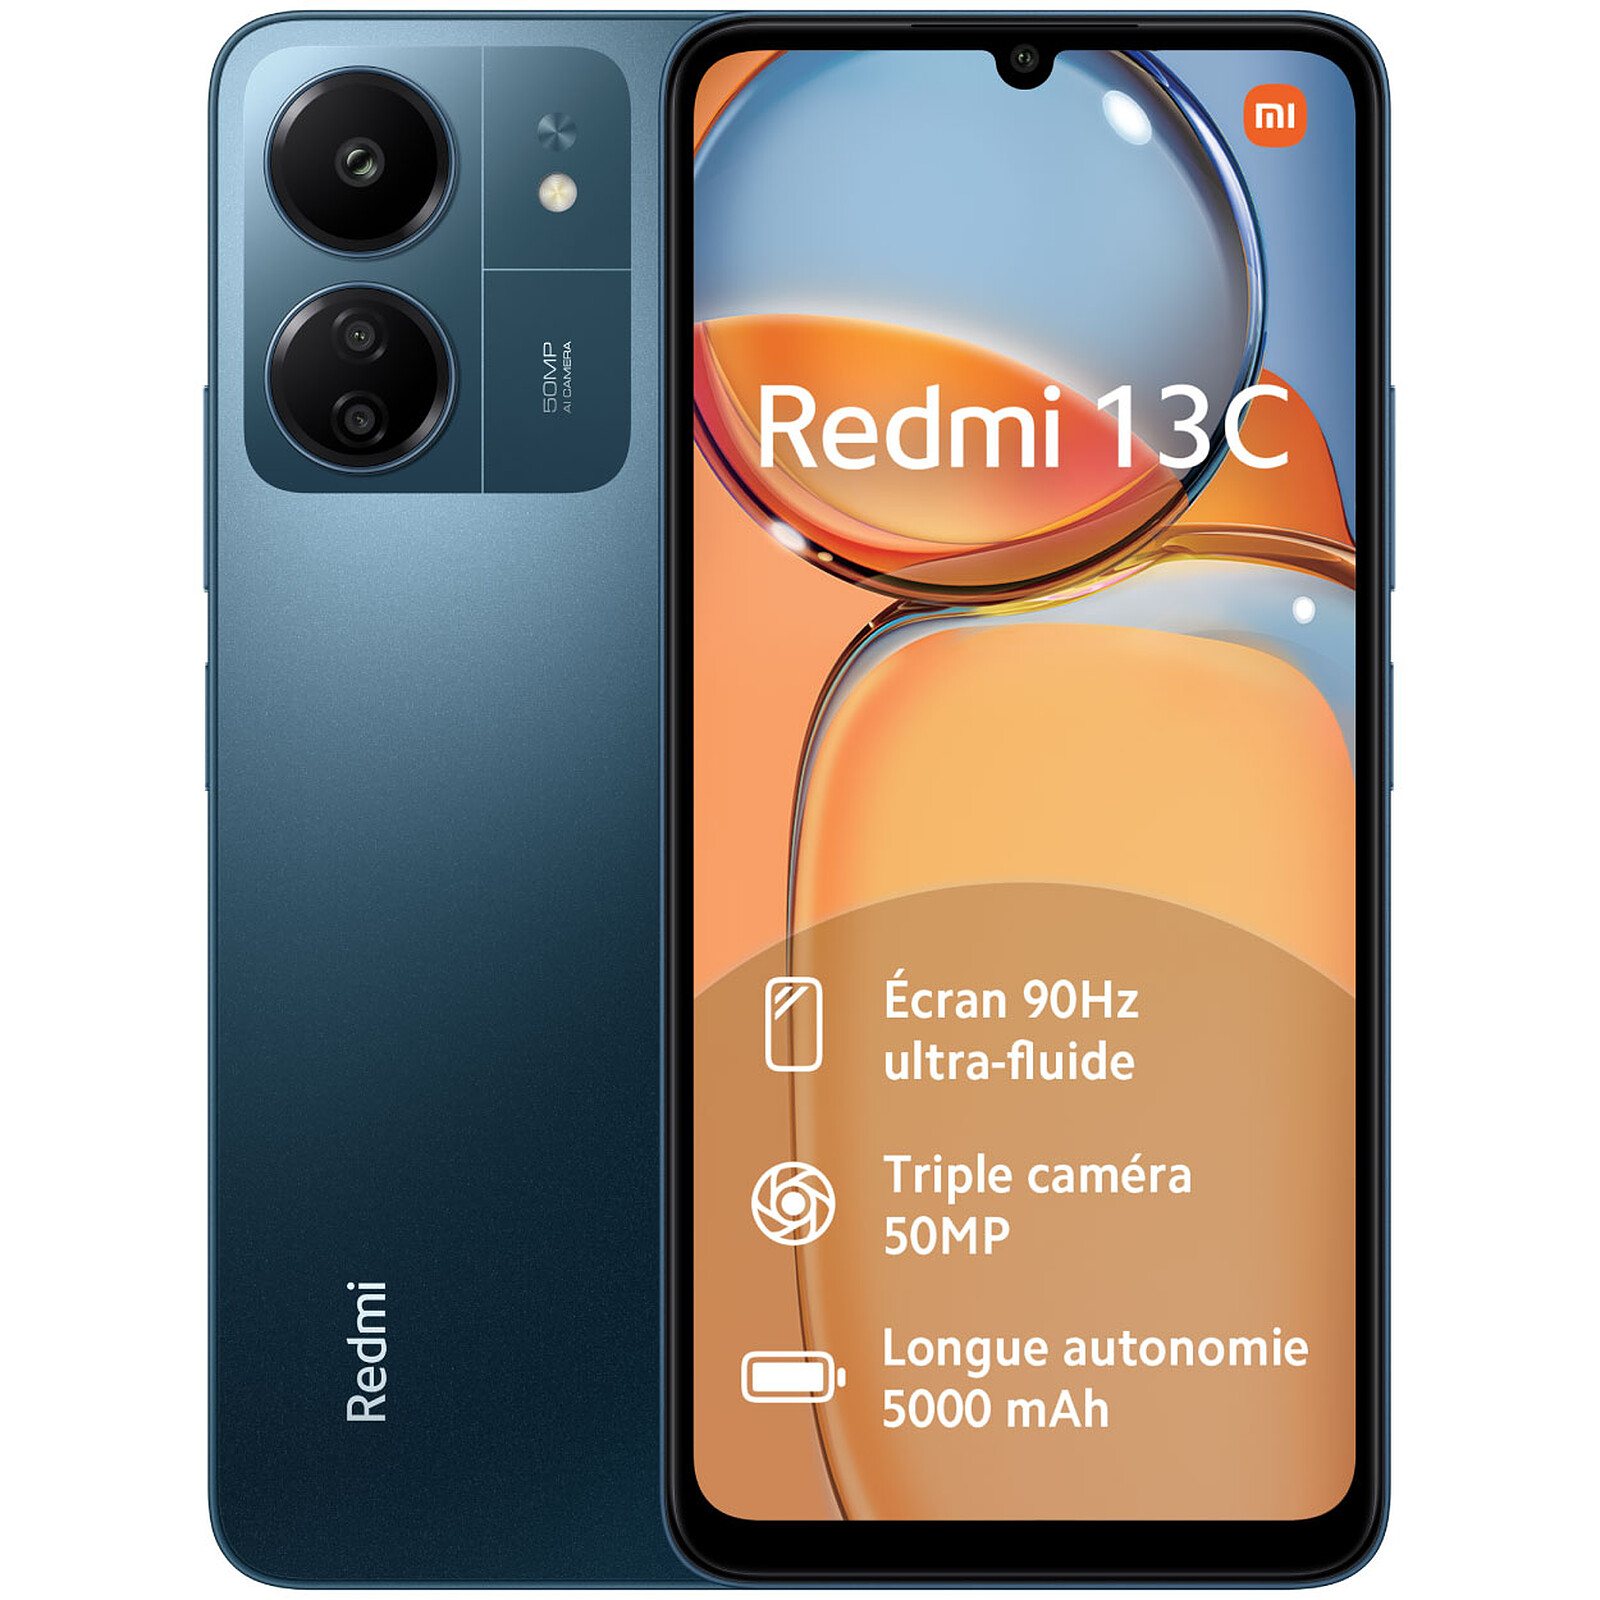 Redmi 13C  Xiaomi Global